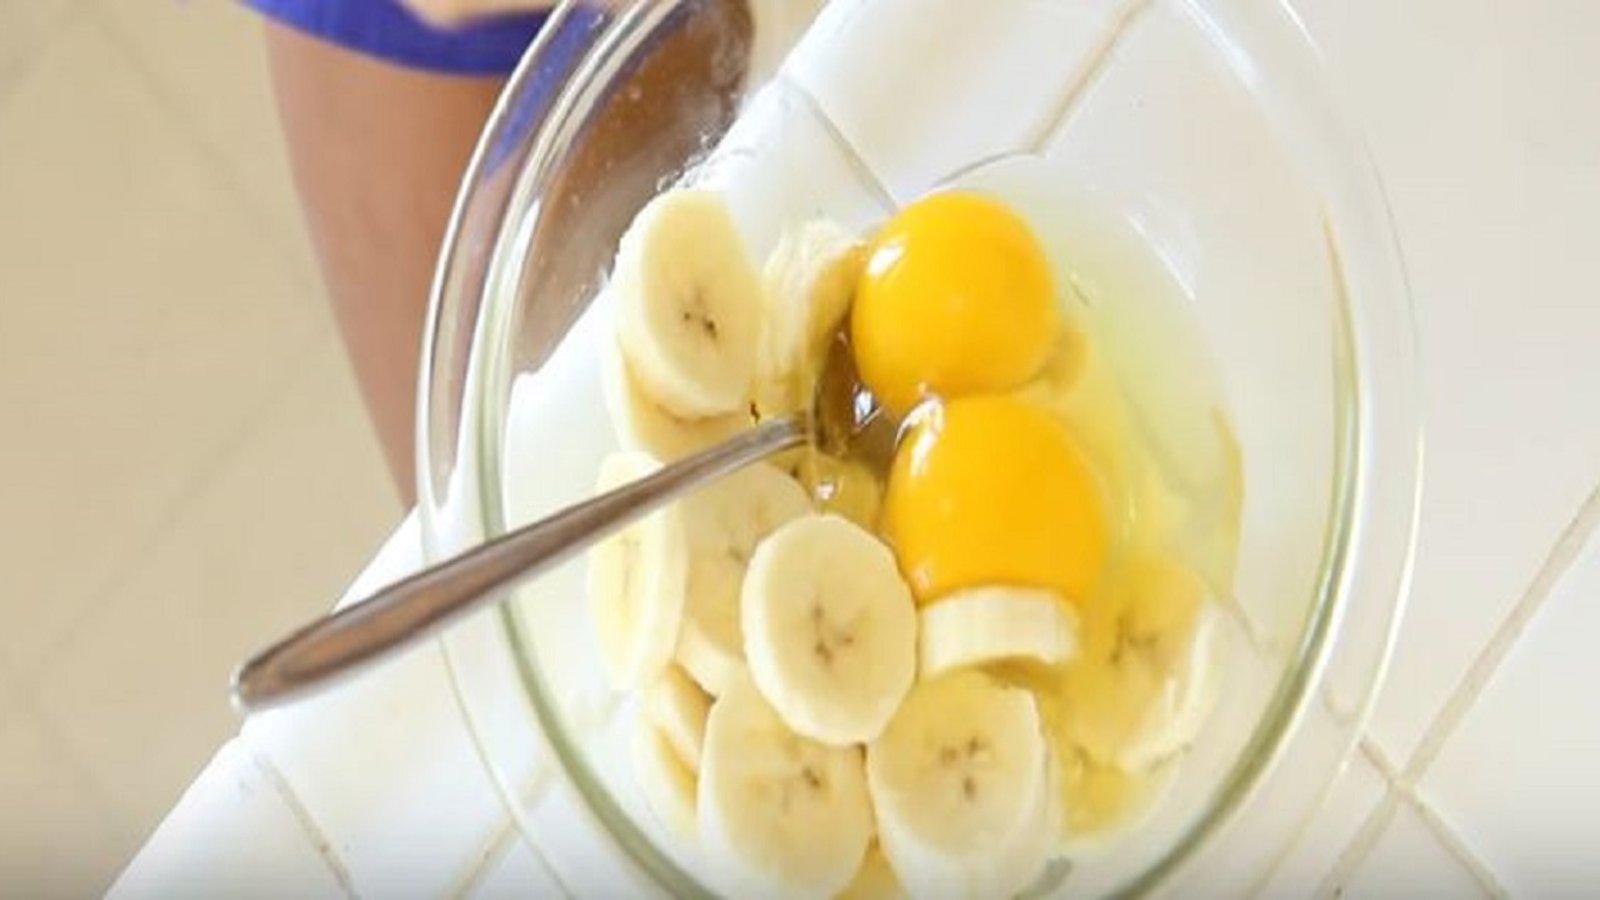 Dans un petit bol, elle casse un oeuf pour ensuite y ajouter des morceaux de banane afin de créer un déjeuner vraiment délicieux